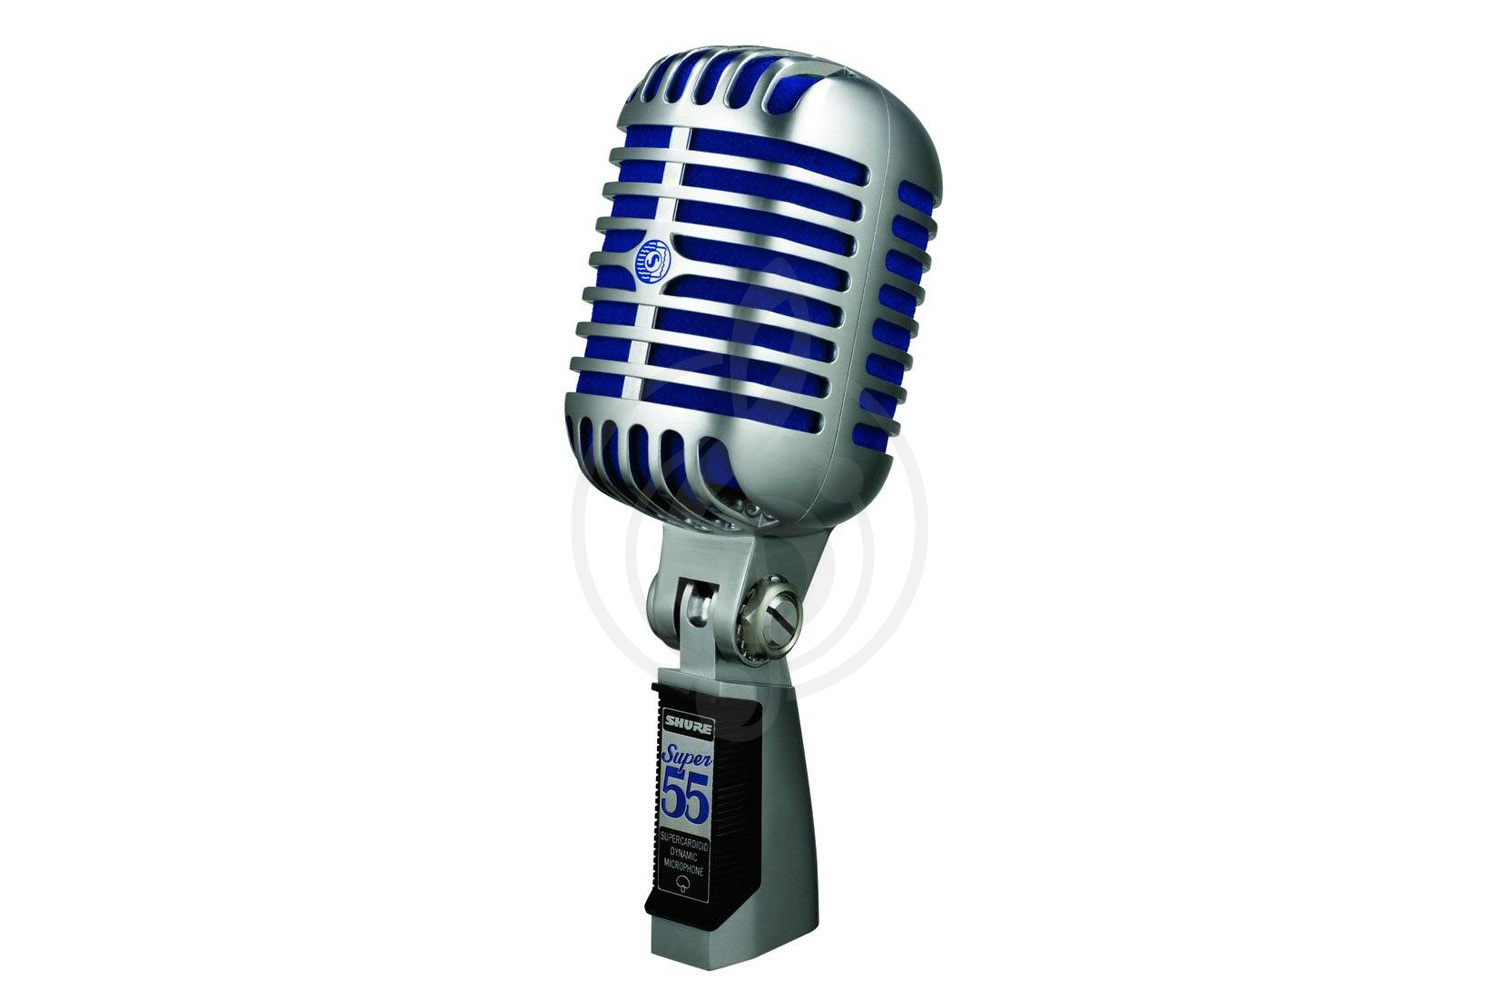 Динамический вокальный микрофон Динамические вокальные микрофоны Shure SHURE Super 55 Deluxe - динамический вокальный микрофон Super 55 Deluxe - фото 1